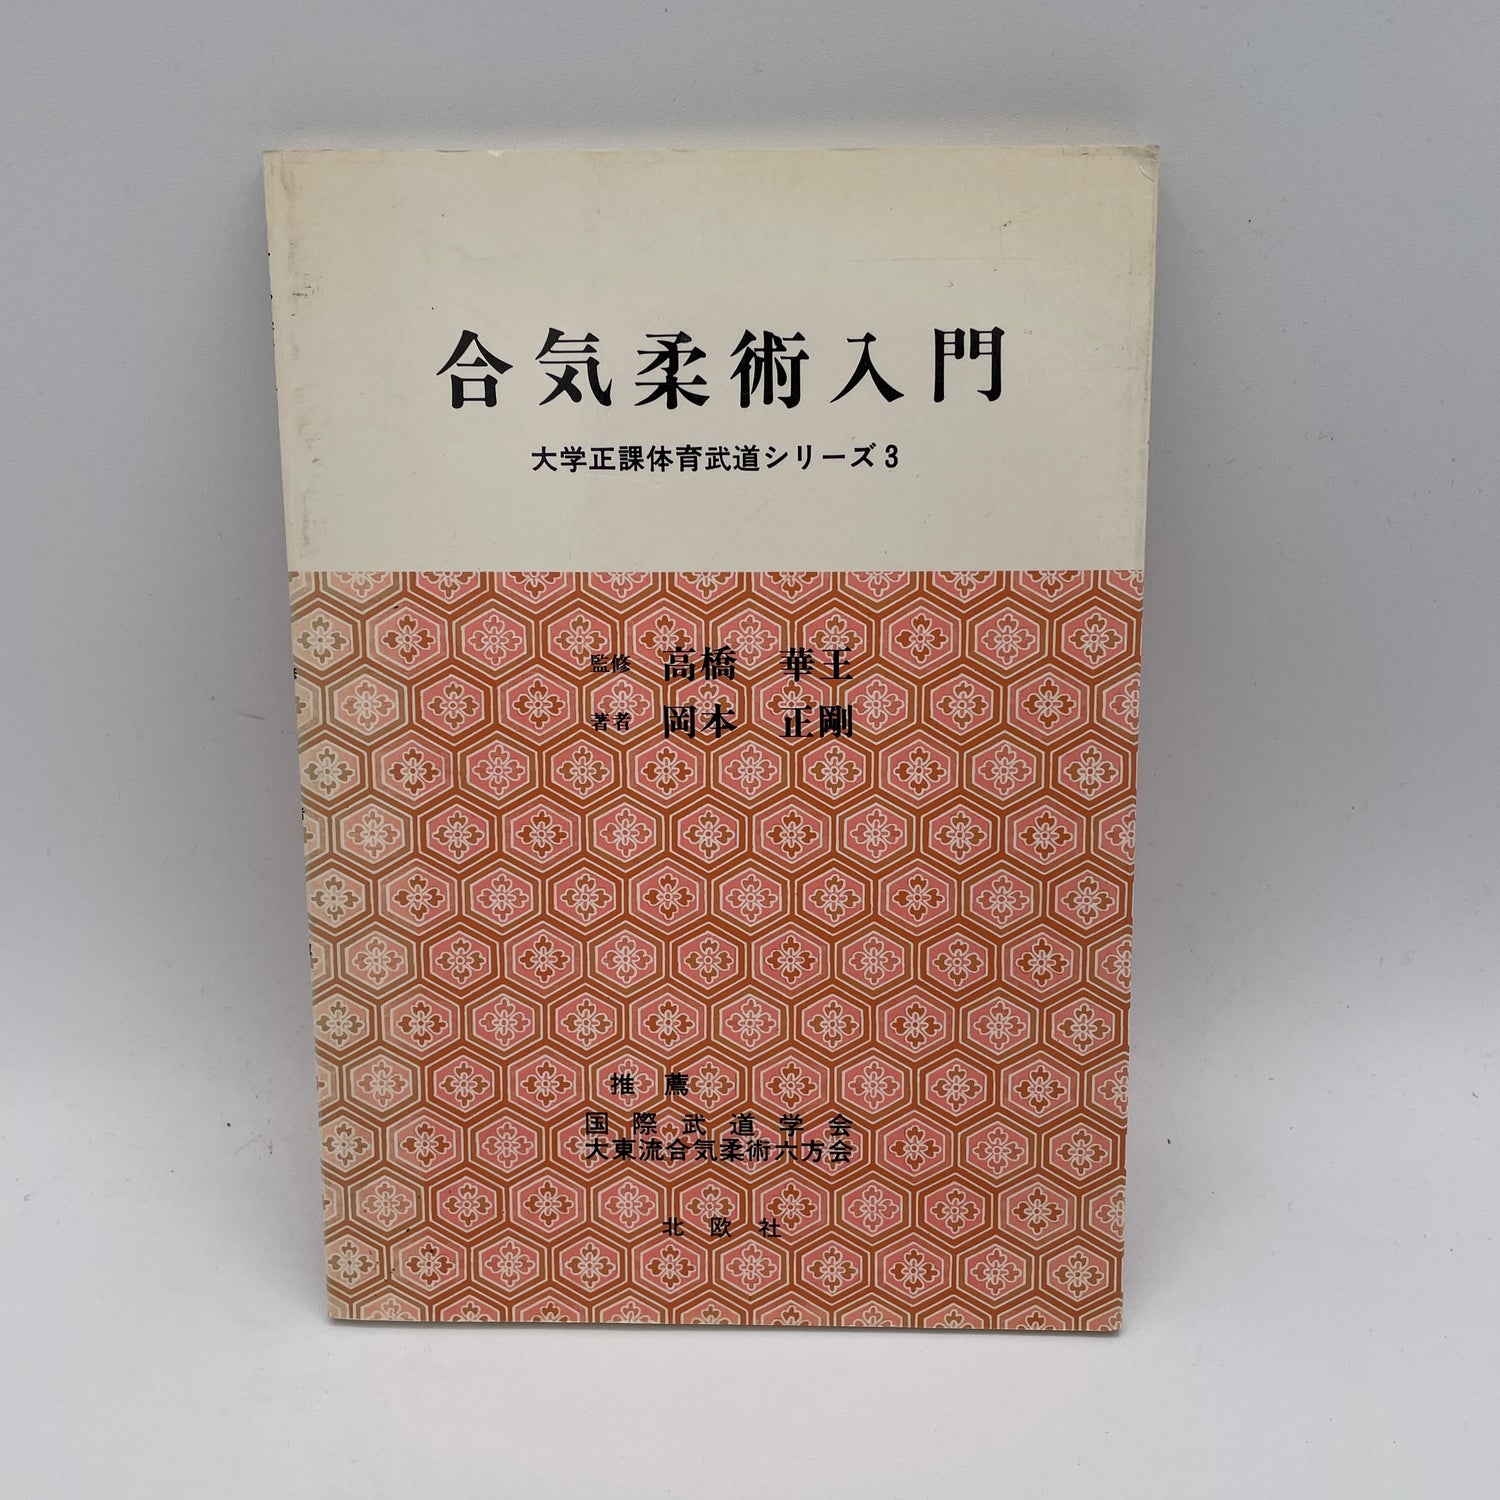 Introducción al Aikijujutsu (University PE Martial Arts Series 3) Libro de Seigo Okamoto (usado) 